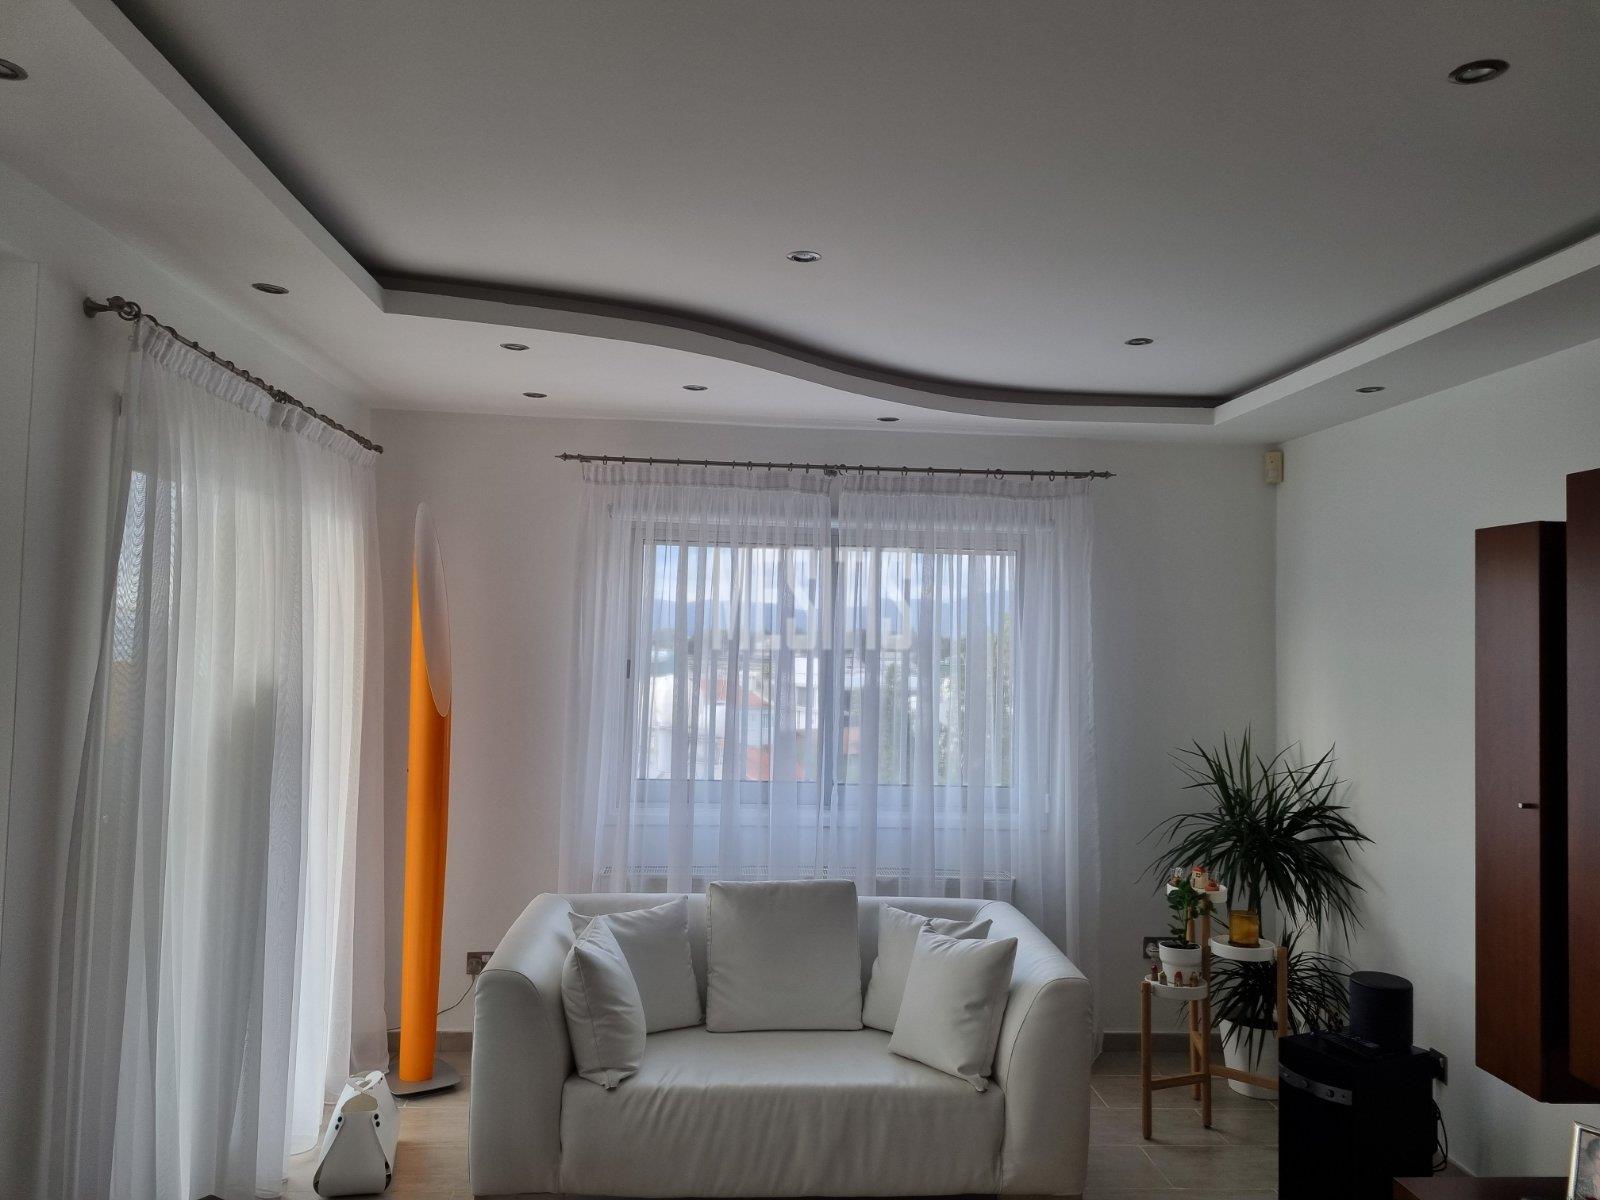 3 Βedroom Τop Floor Apartment For Sale In A Prime Location With Large Spaces And Incredible Aesthetics Αnd Views To All Of Nicosia #30861-3